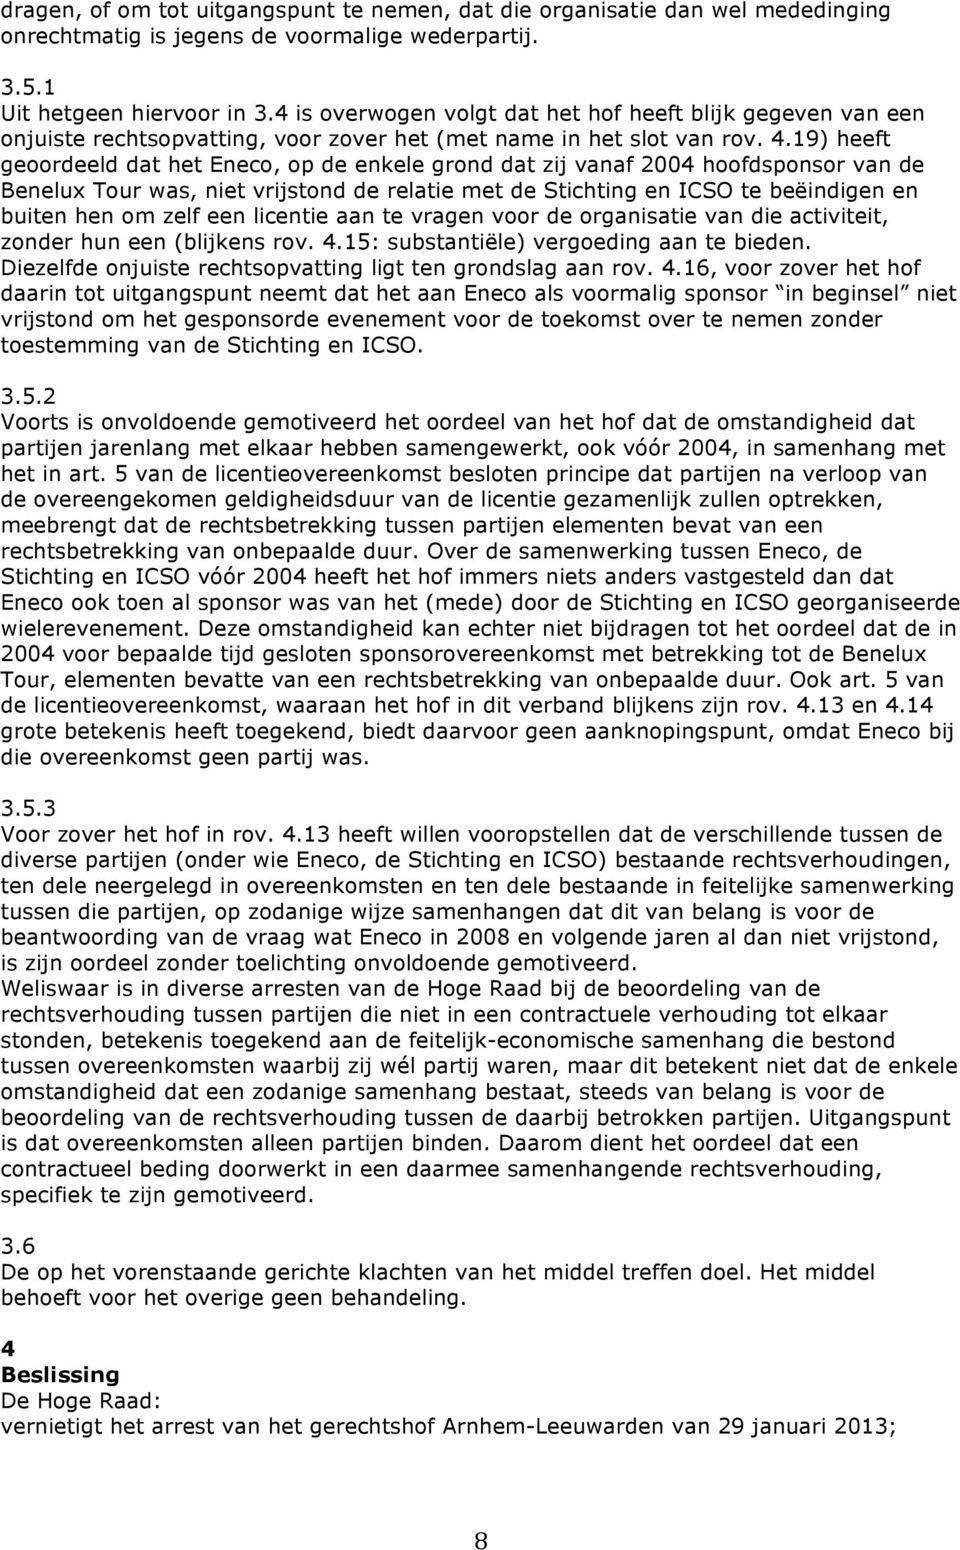 19) heeft geoordeeld dat het Eneco, op de enkele grond dat zij vanaf 2004 hoofdsponsor van de Benelux Tour was, niet vrijstond de relatie met de Stichting en ICSO te beëindigen en buiten hen om zelf